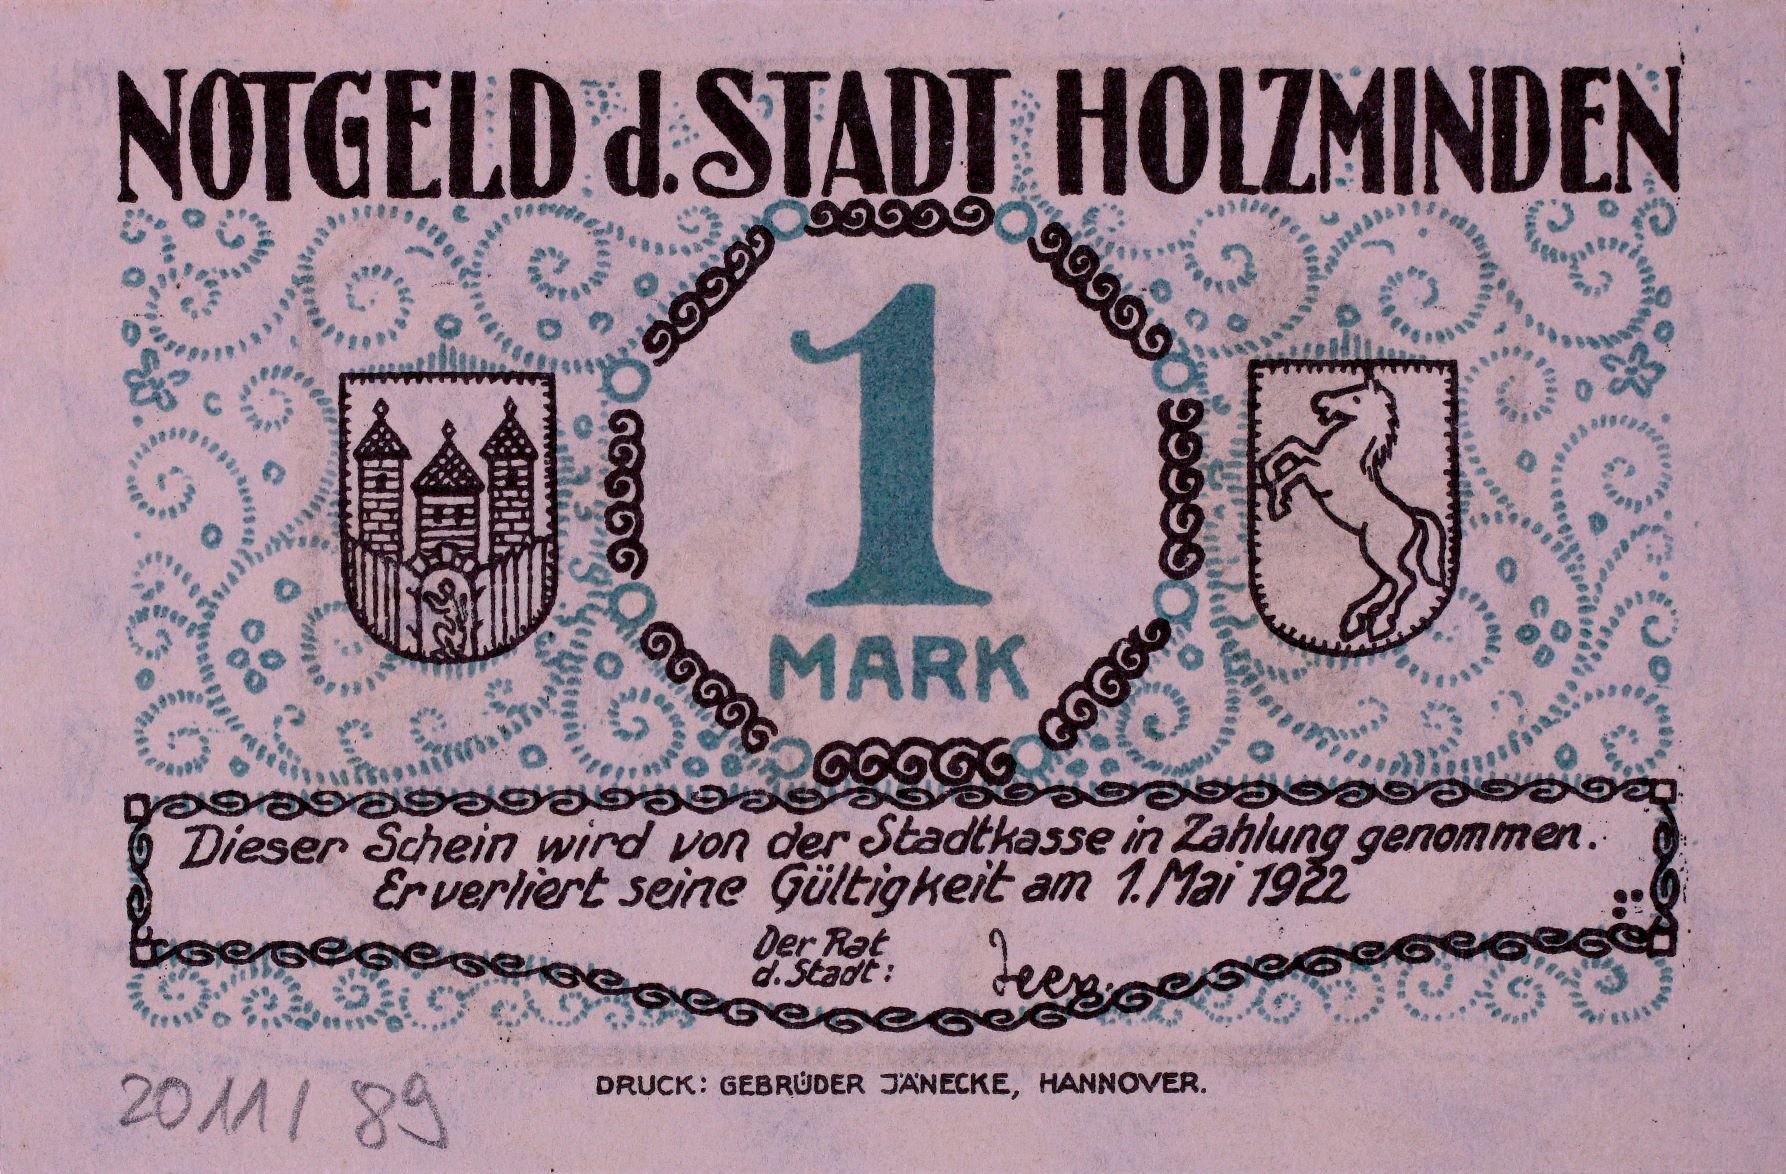 Notgeld der Stadt Holzminden 1922 1 Mark VS (Rheinisches Schützenmuseum Neuss CC BY-NC-SA)